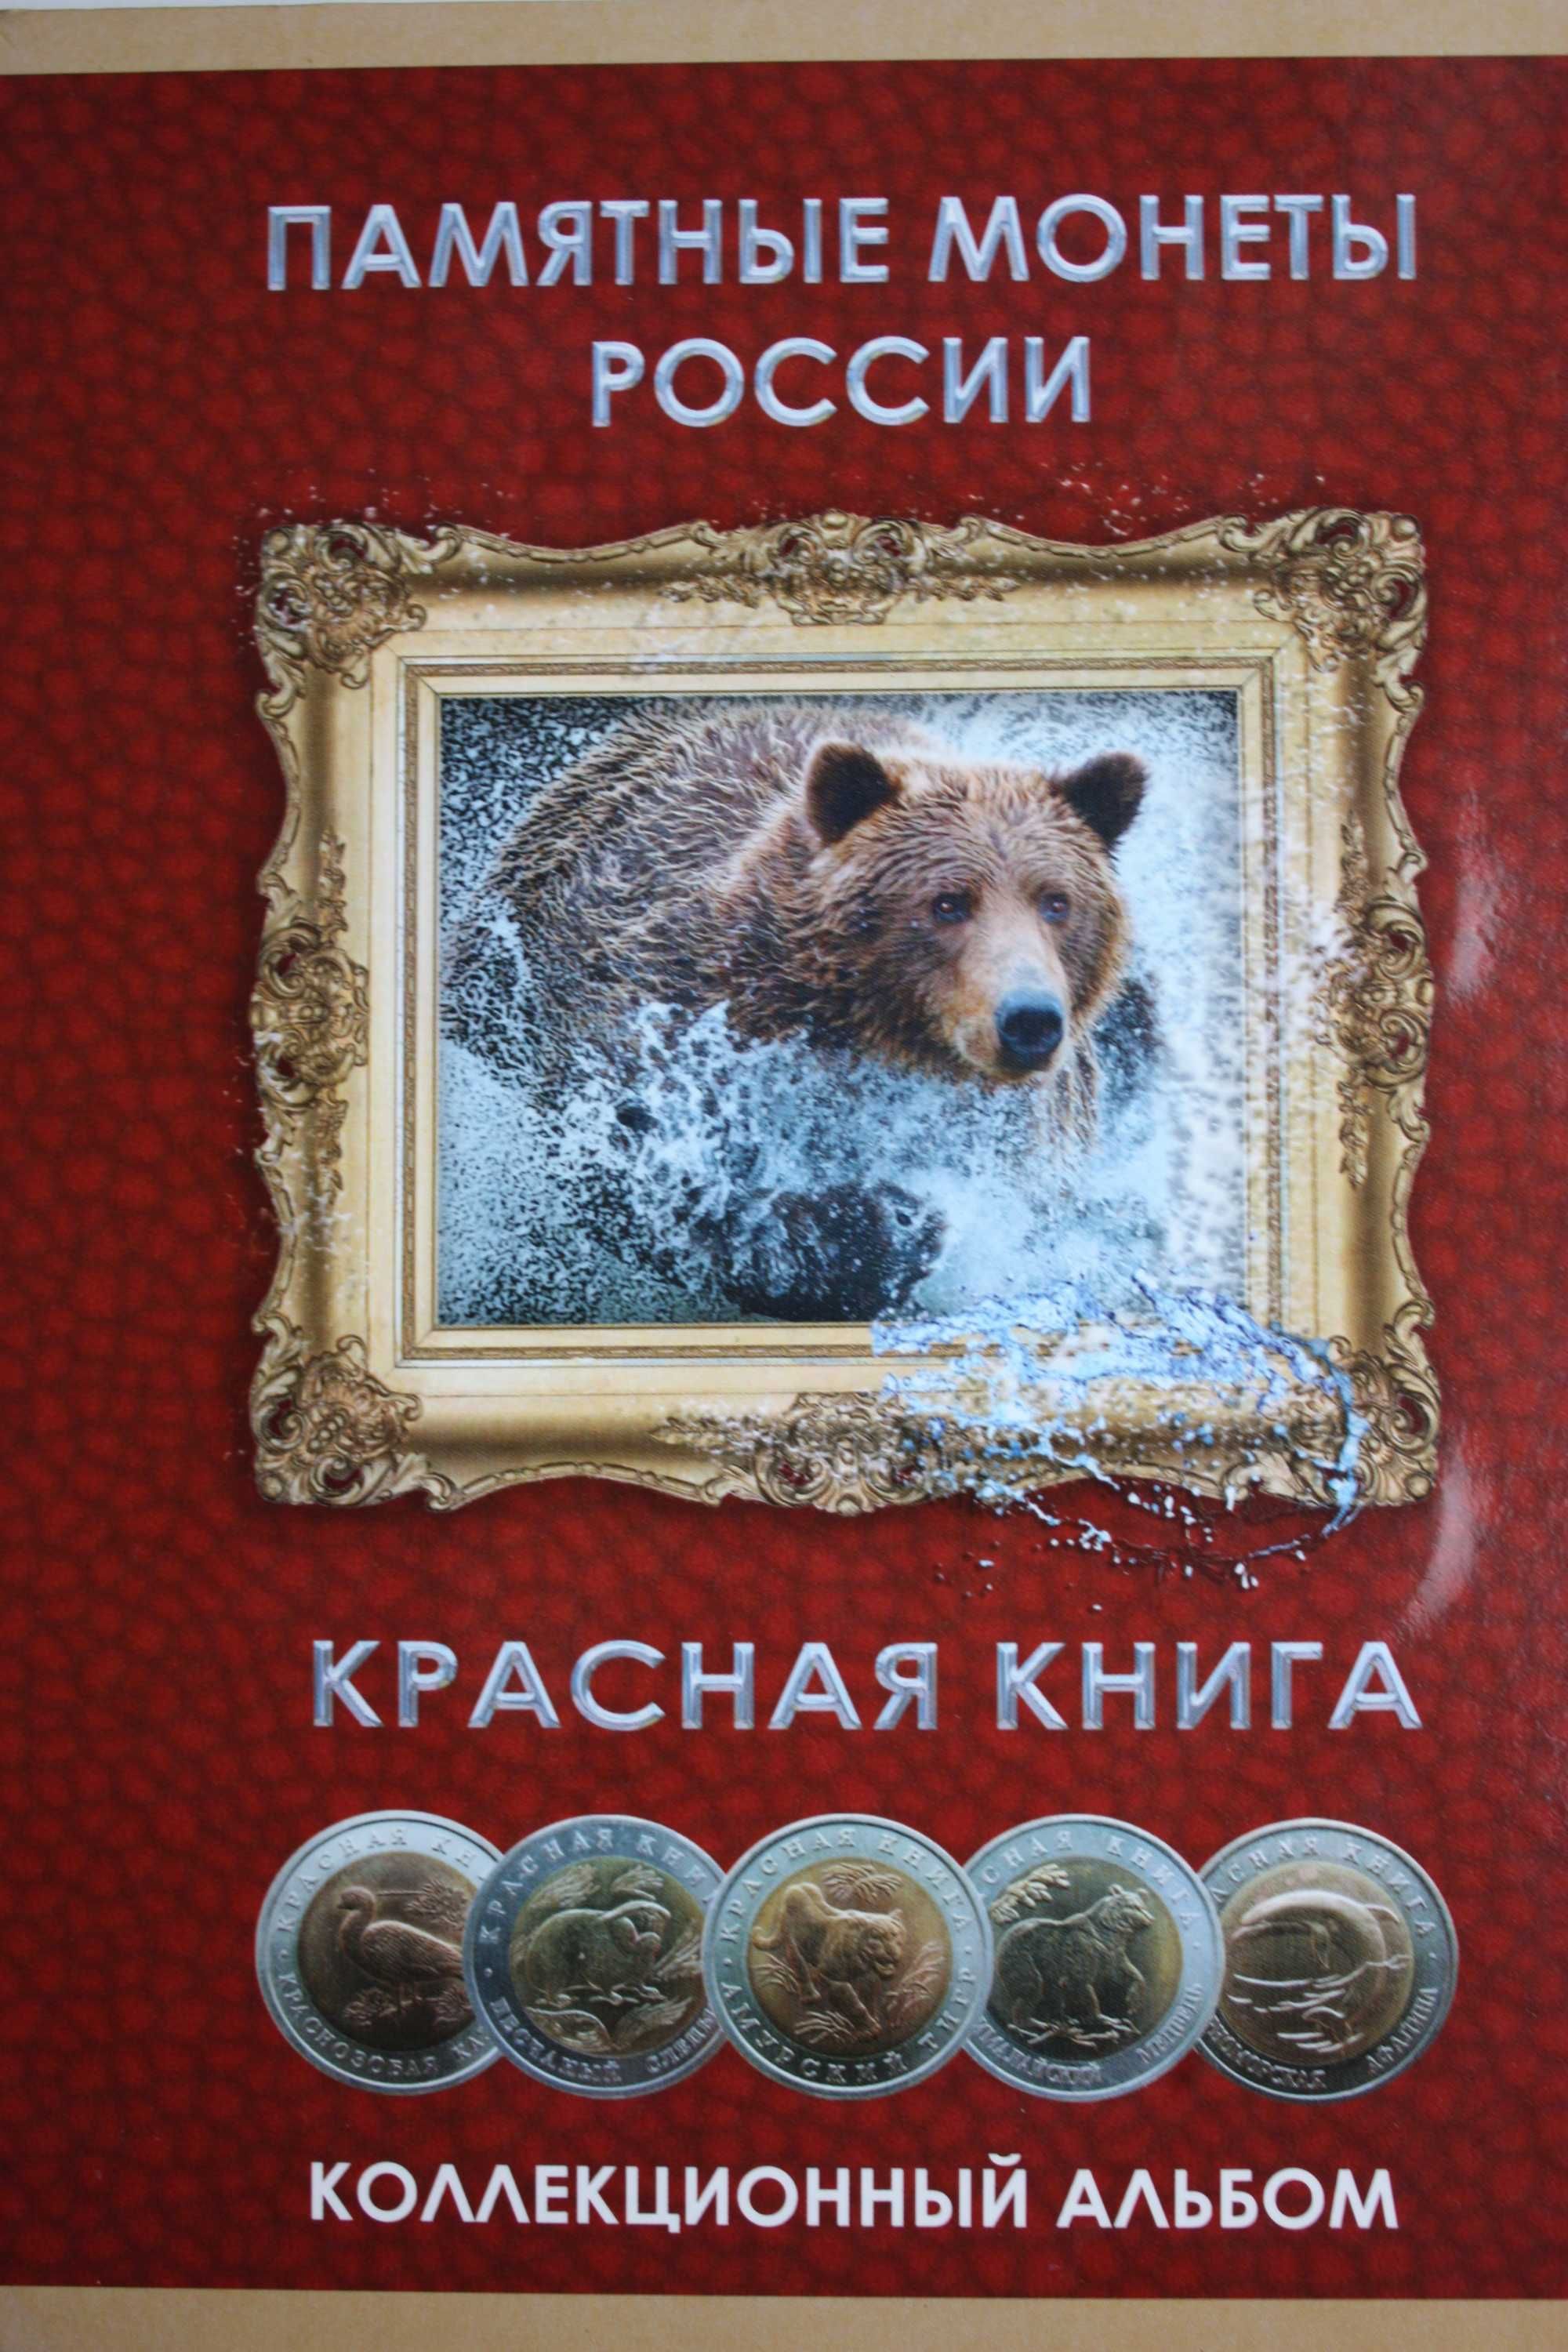 Набор монет "Красная книга" 1991-1994 г.г. (ЛМД) оригинал с планшетом